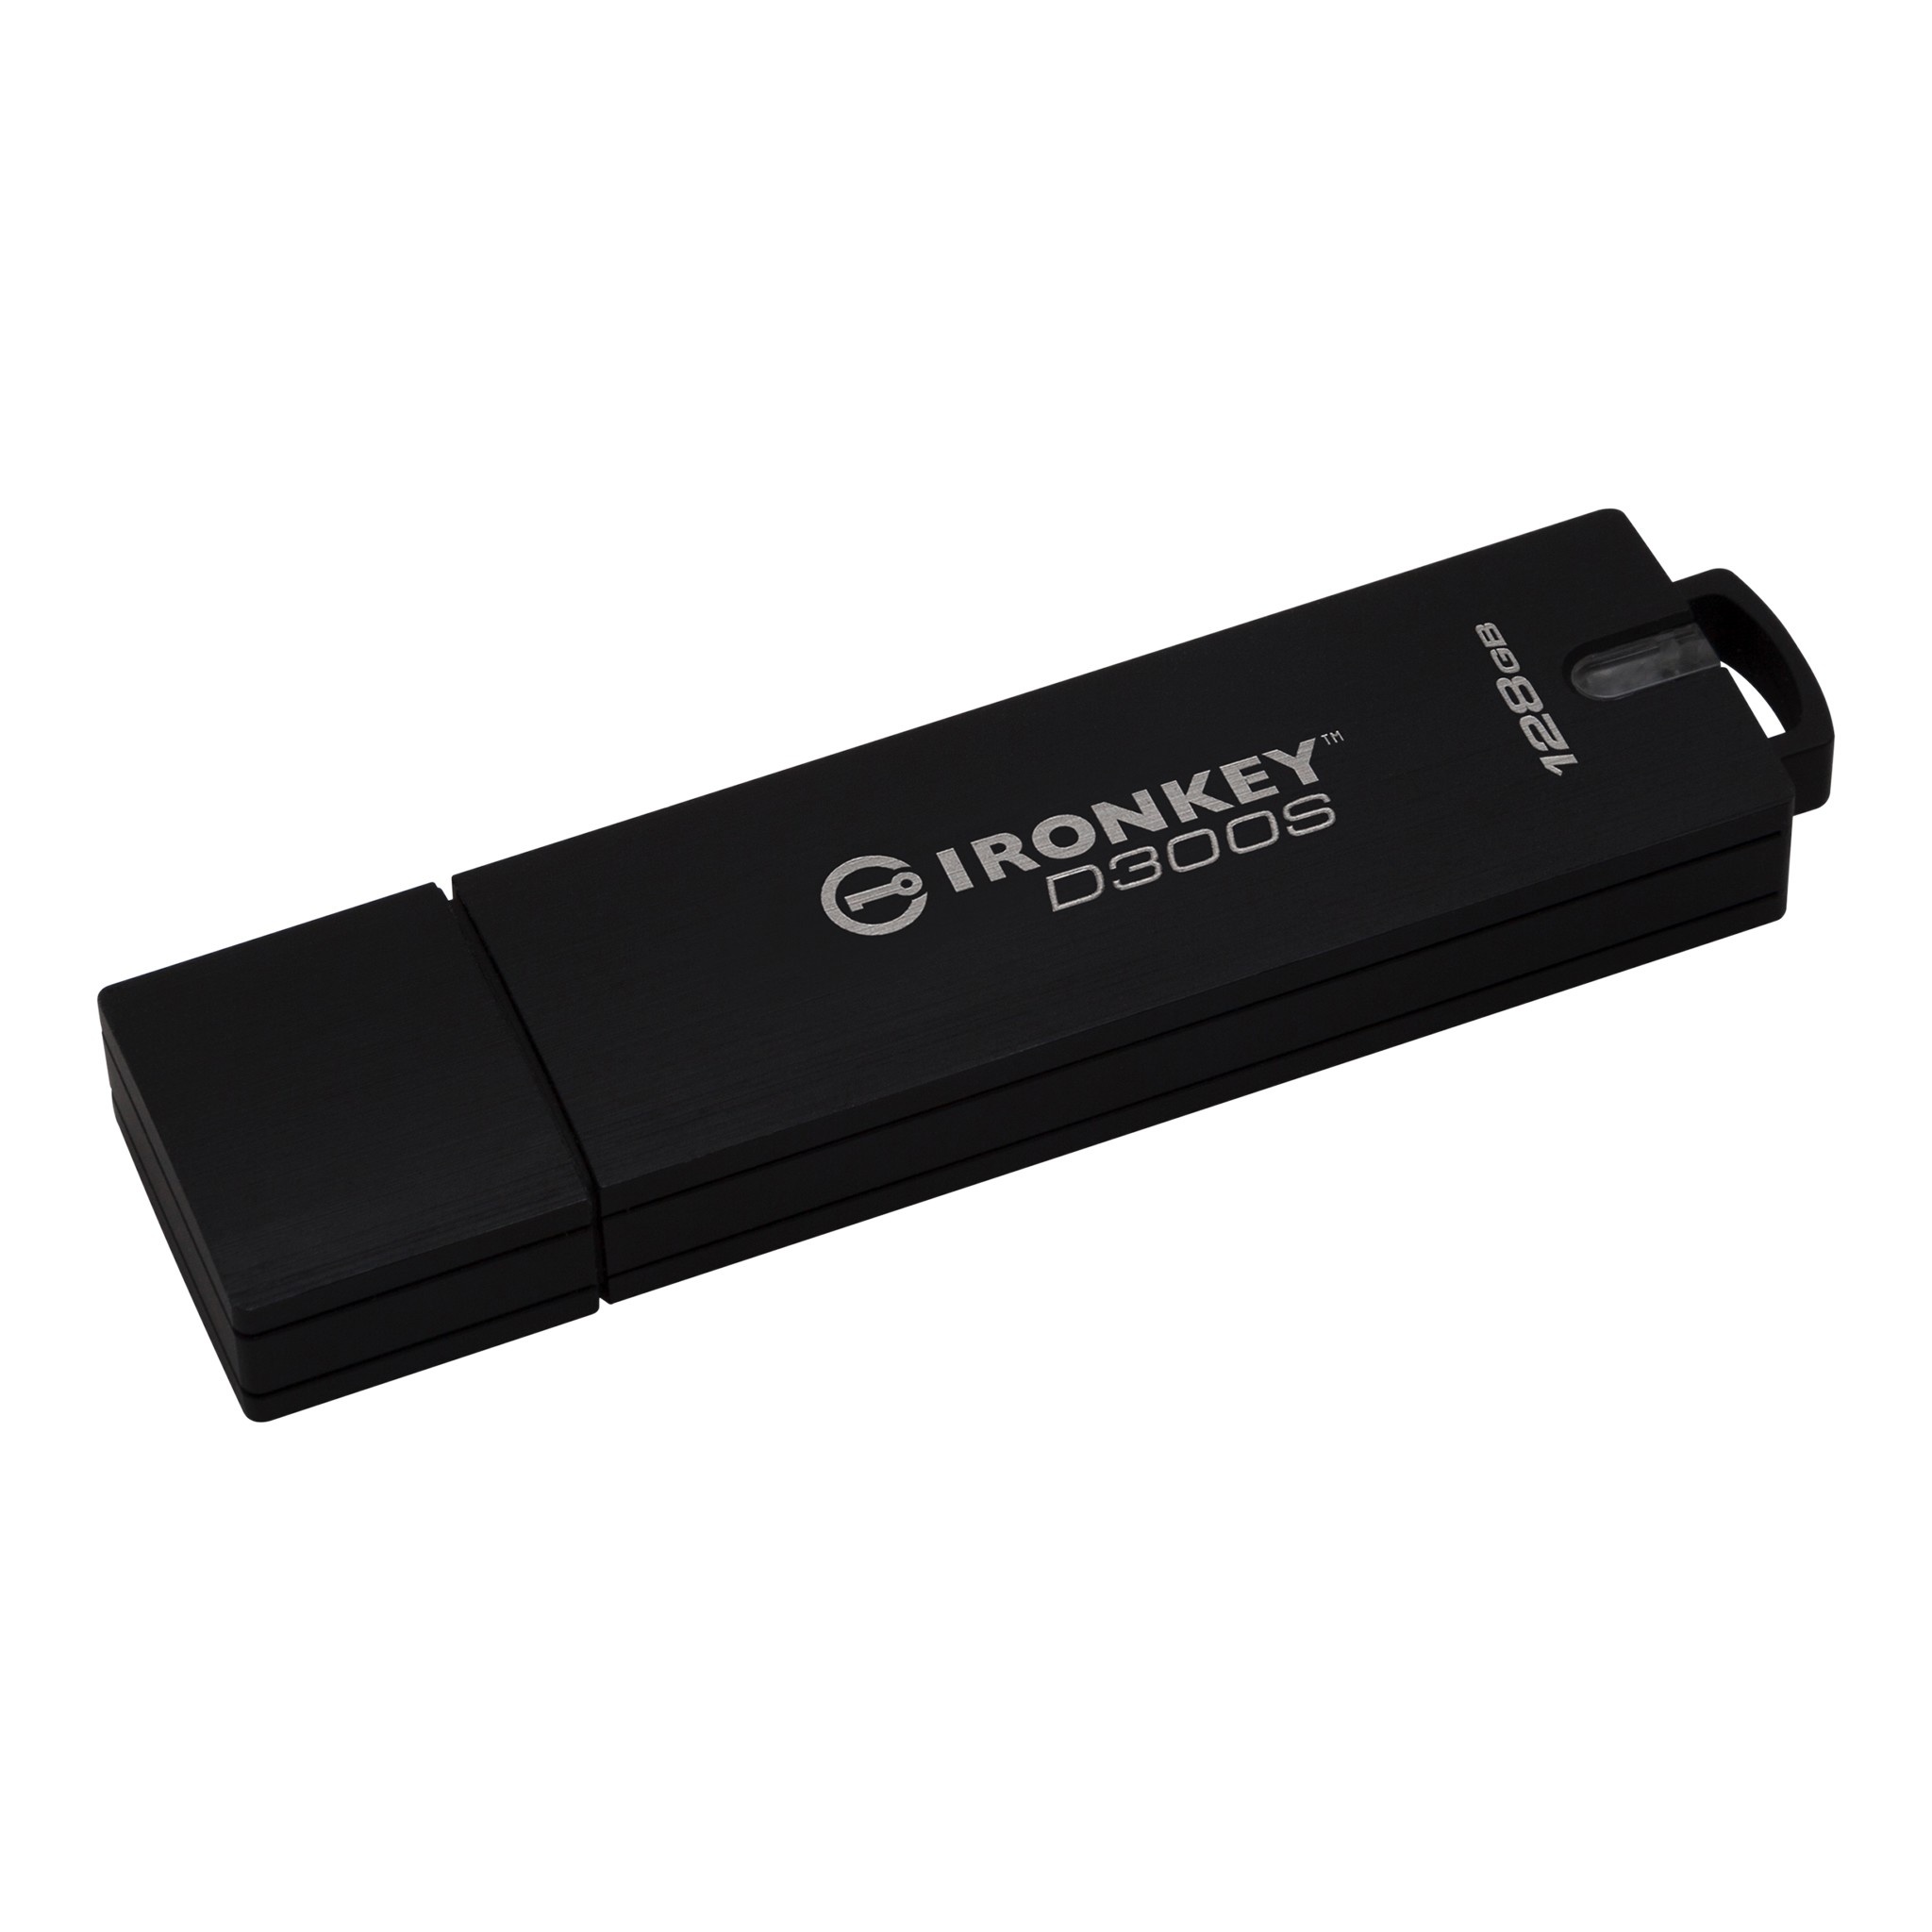 Bild von IronKey D300S 128 GB schwarz USB 3.1